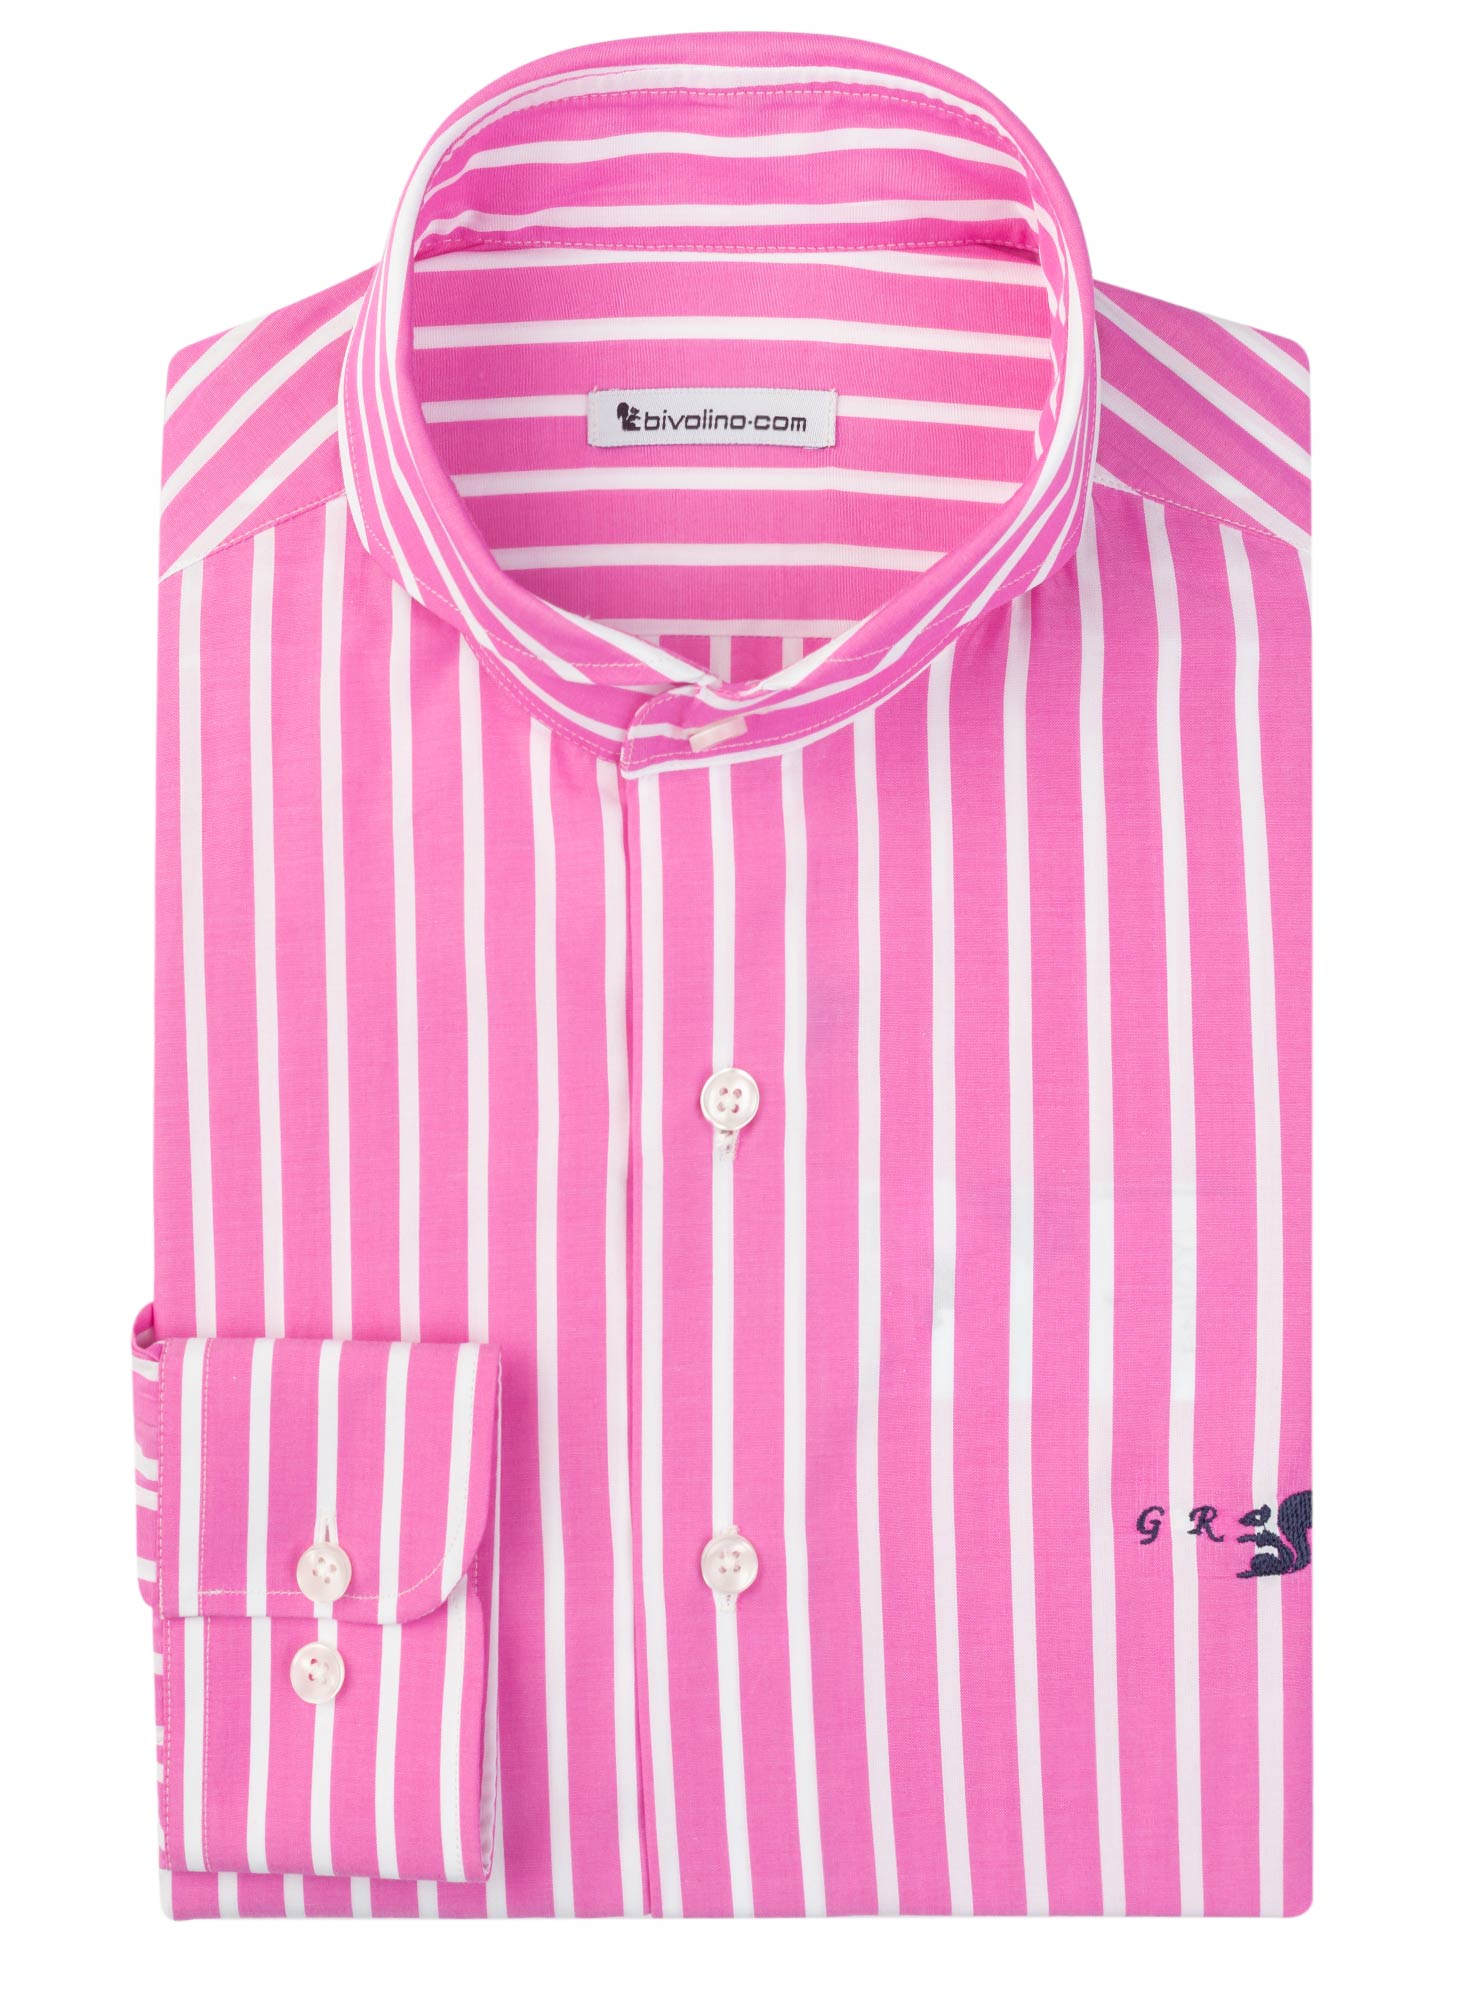 PESCARA - Striped Poplin pink tailored men shirt - Trex 1